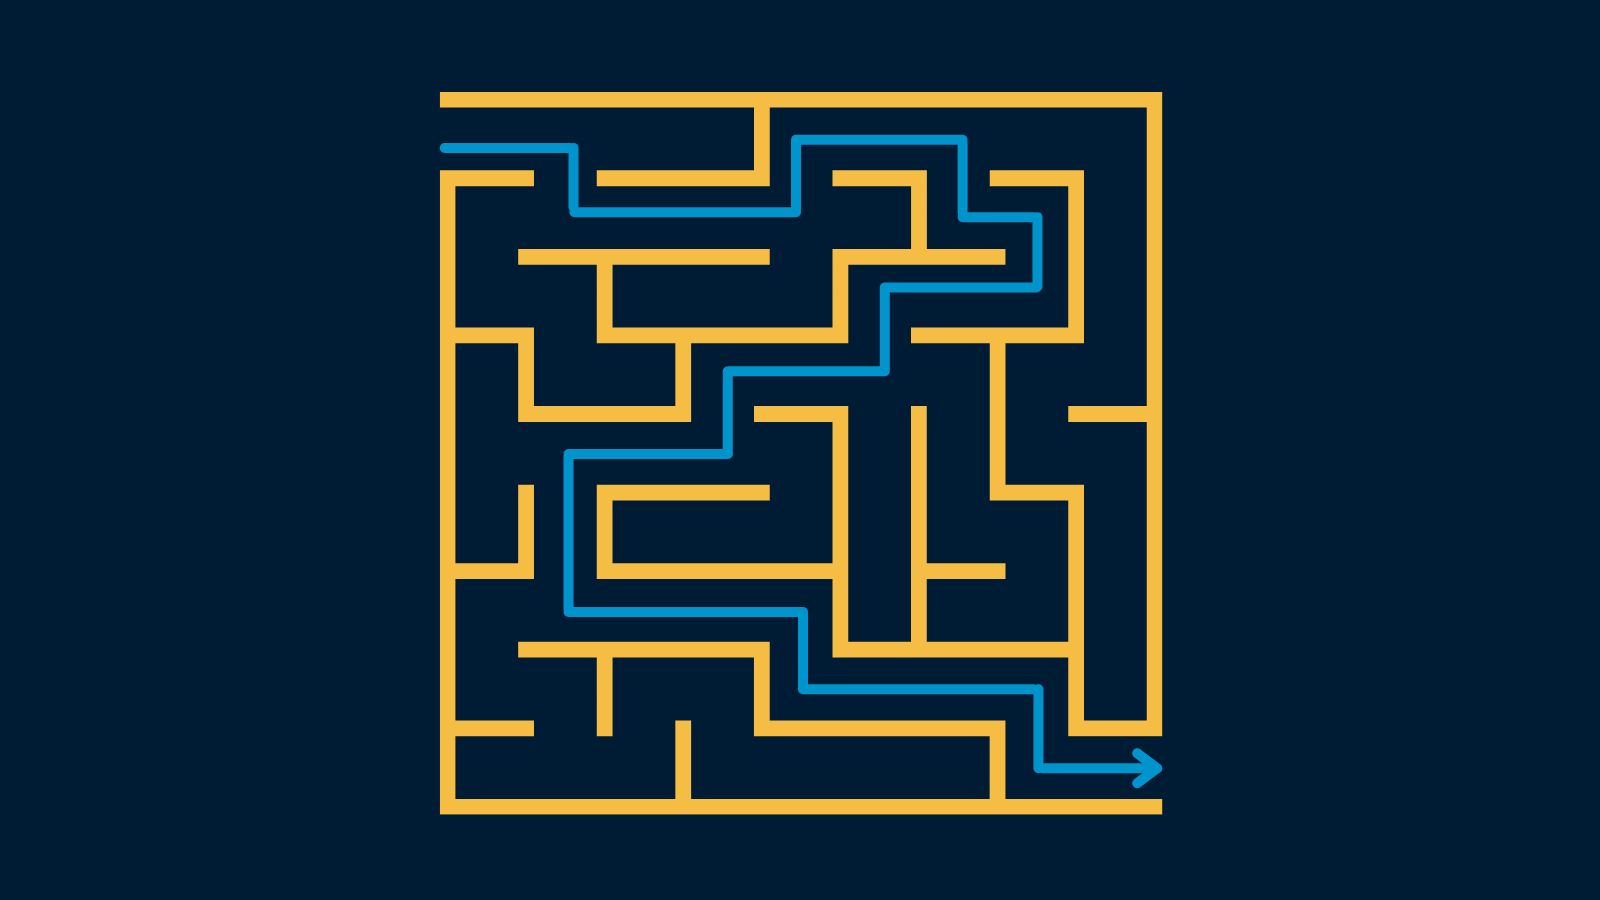 Image showing an arrow move through a maze.